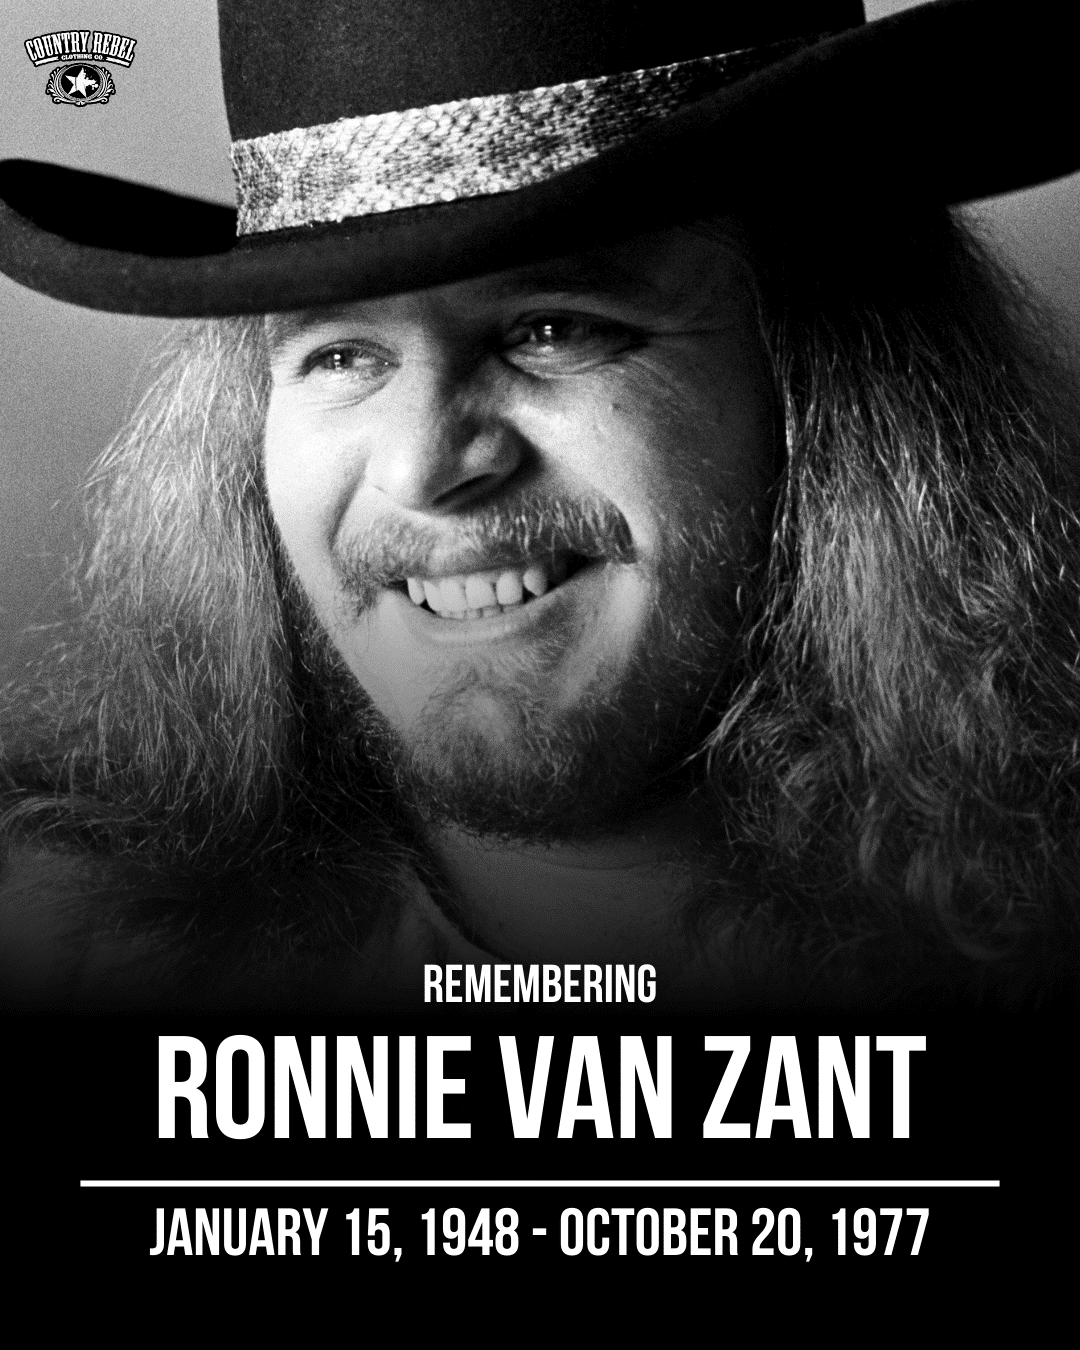 A tribute to Ronnie Van Zant of Lynyrd Skynyrd